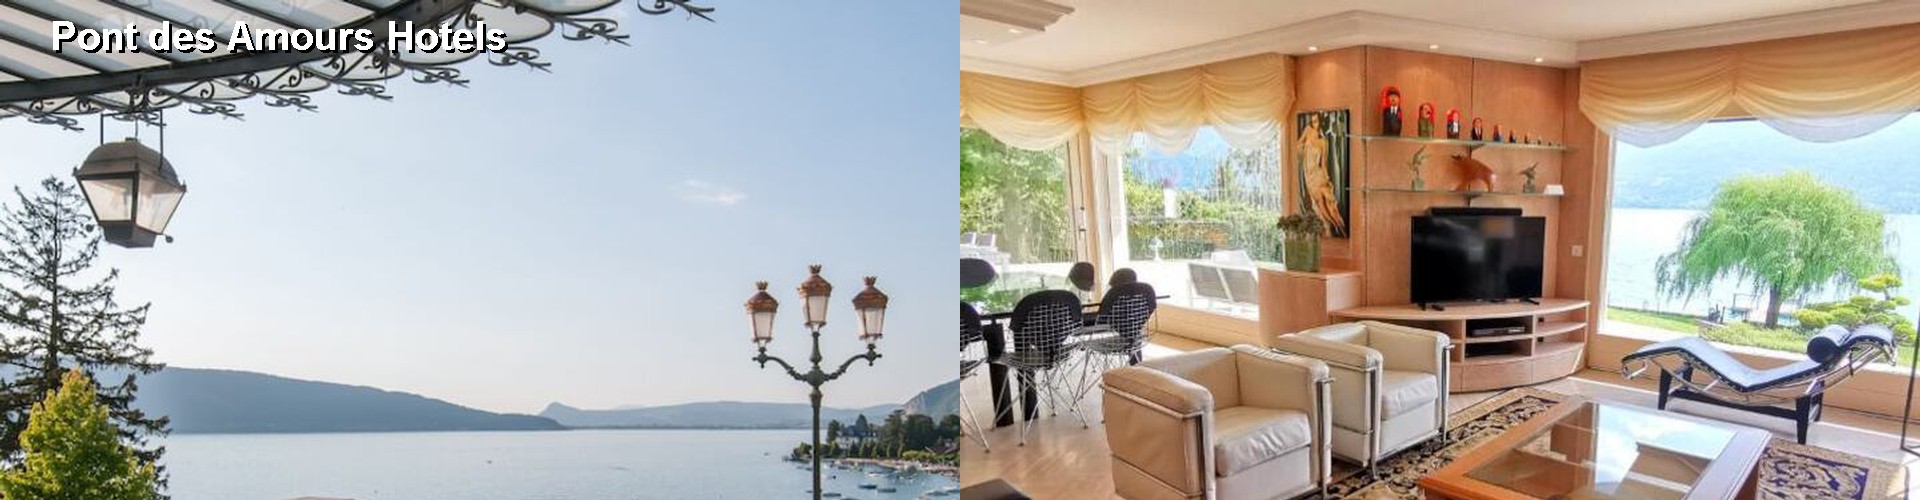 5 Best Hotels near Pont des Amours